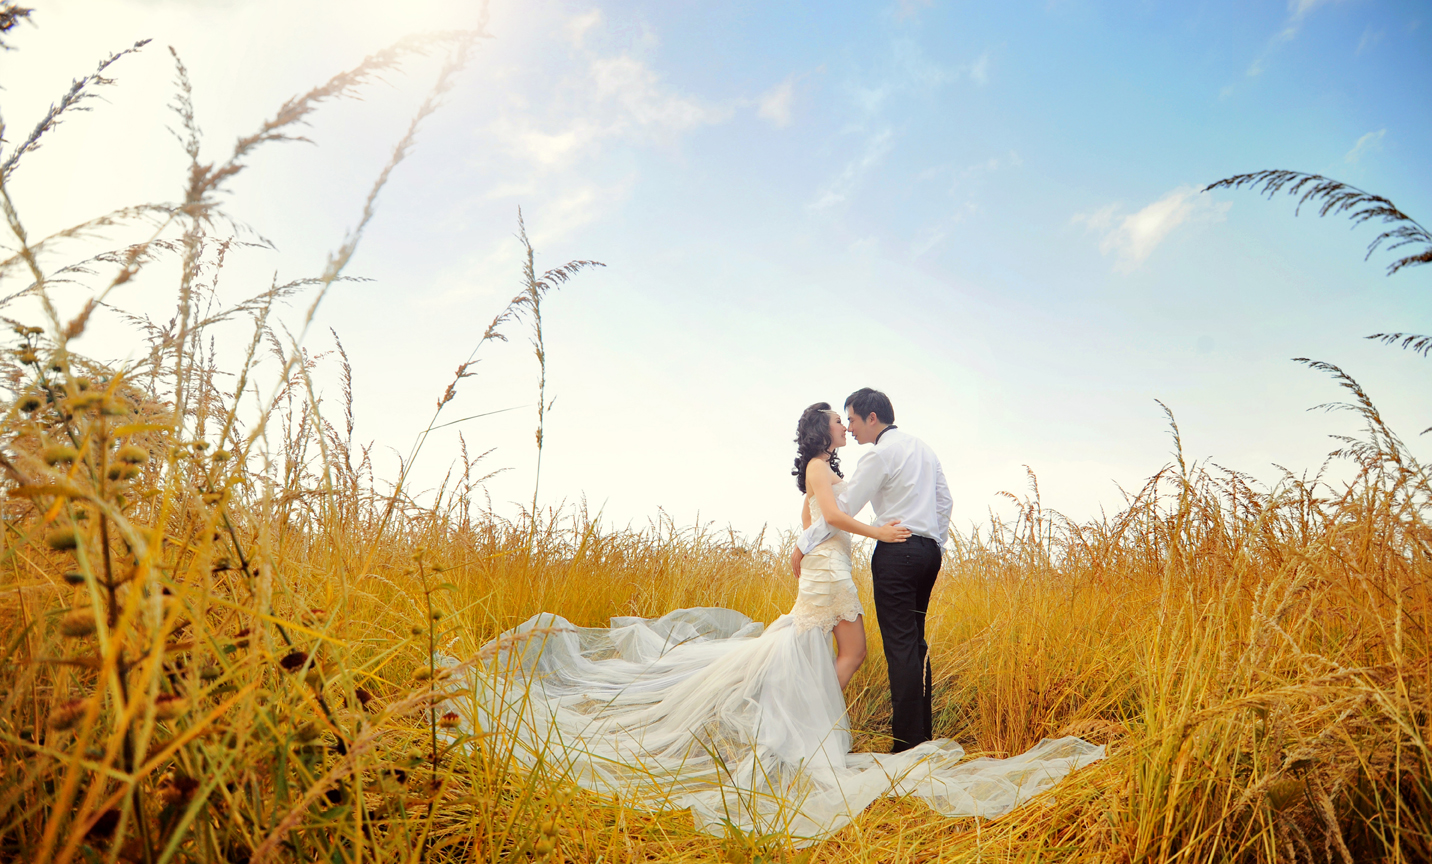 Pre-wedding Photoshoot Ideas, Indoor and Outdoor - InspirationSeek.com